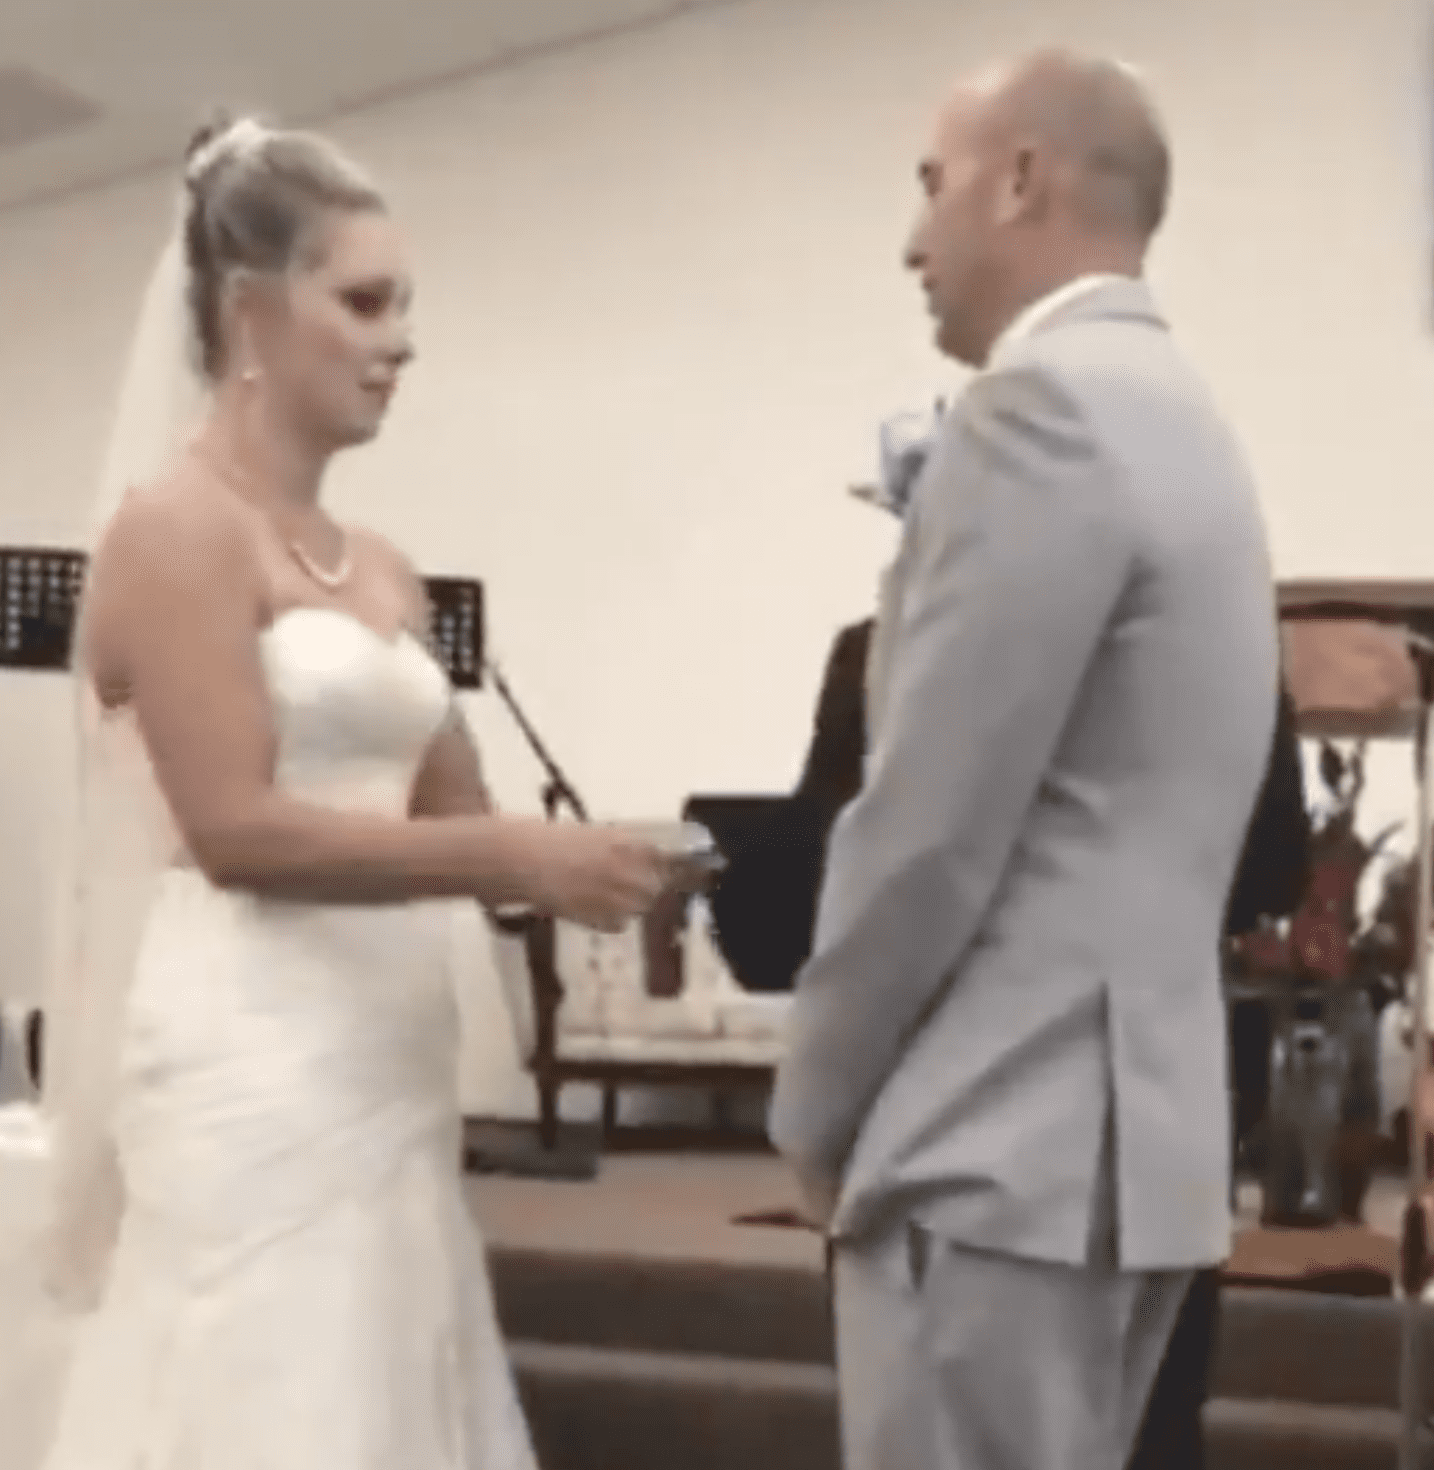 Eine Braut und ein Bräutigam teilen ihr Gelübde | Quelle: Youtube.com/JP Today News